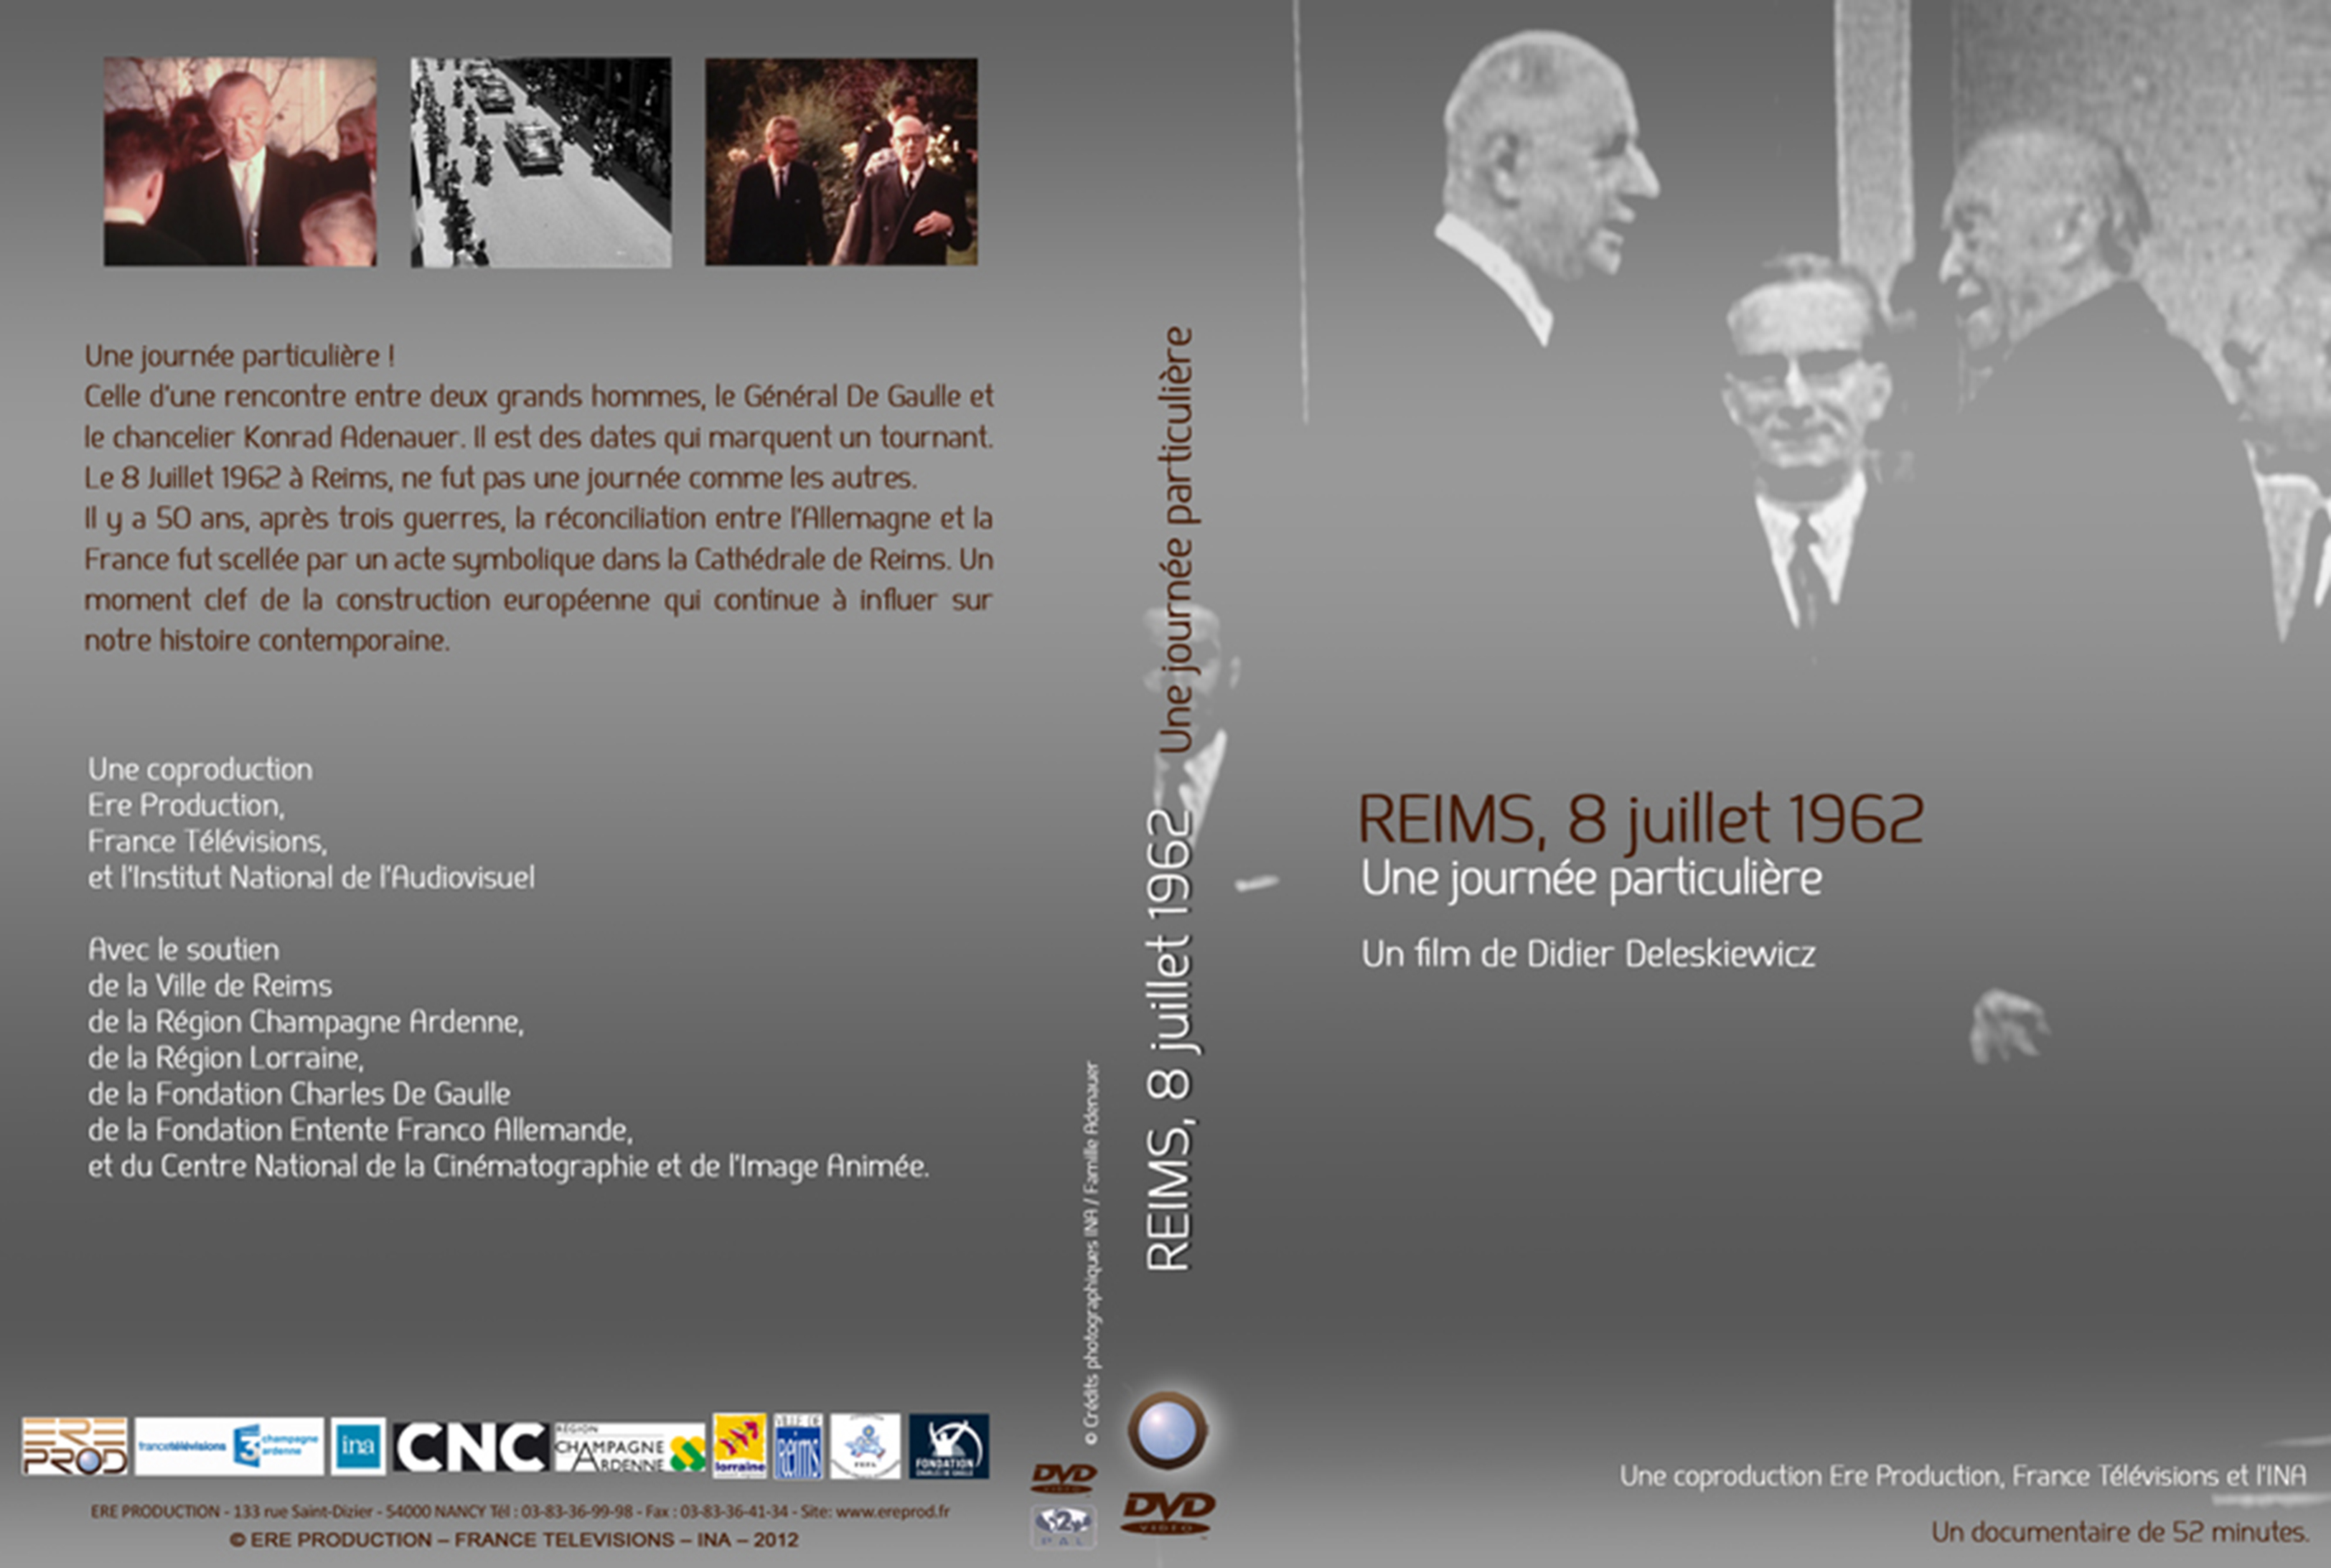 Jaquette DVD Reims, 8 juillet 1962 Une journee particuliere custom